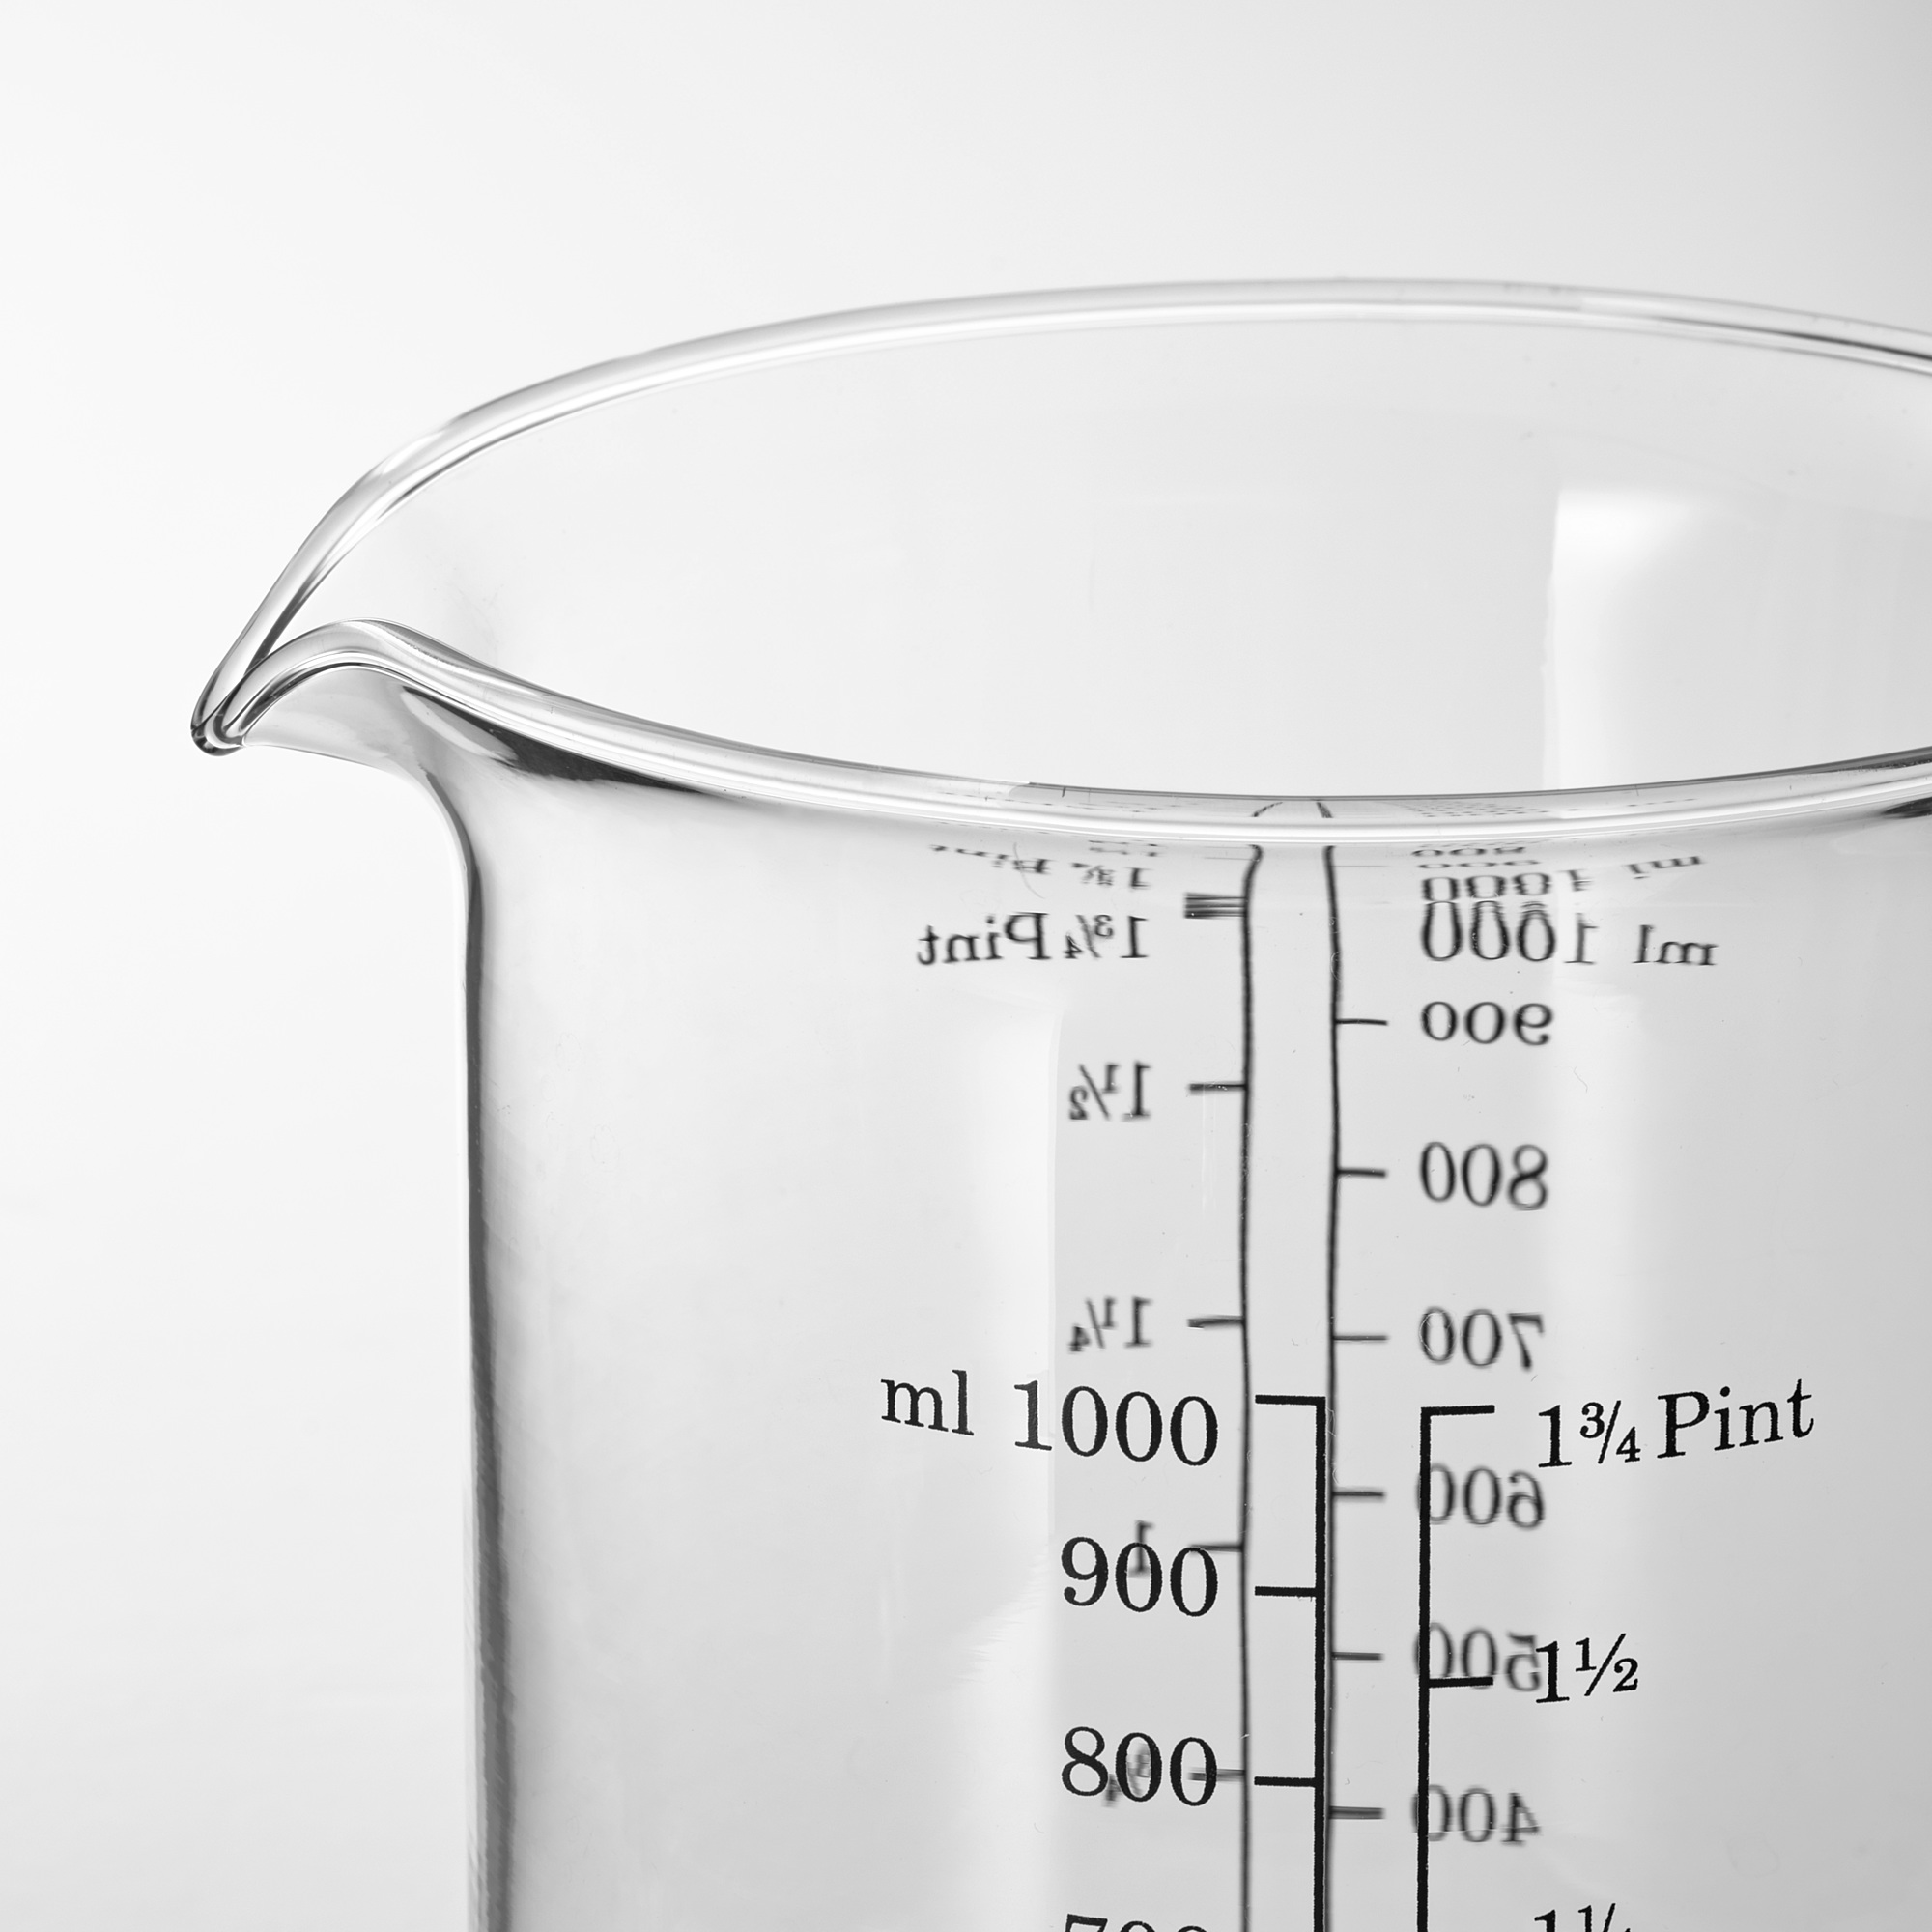 VARDAGEN measuring jug